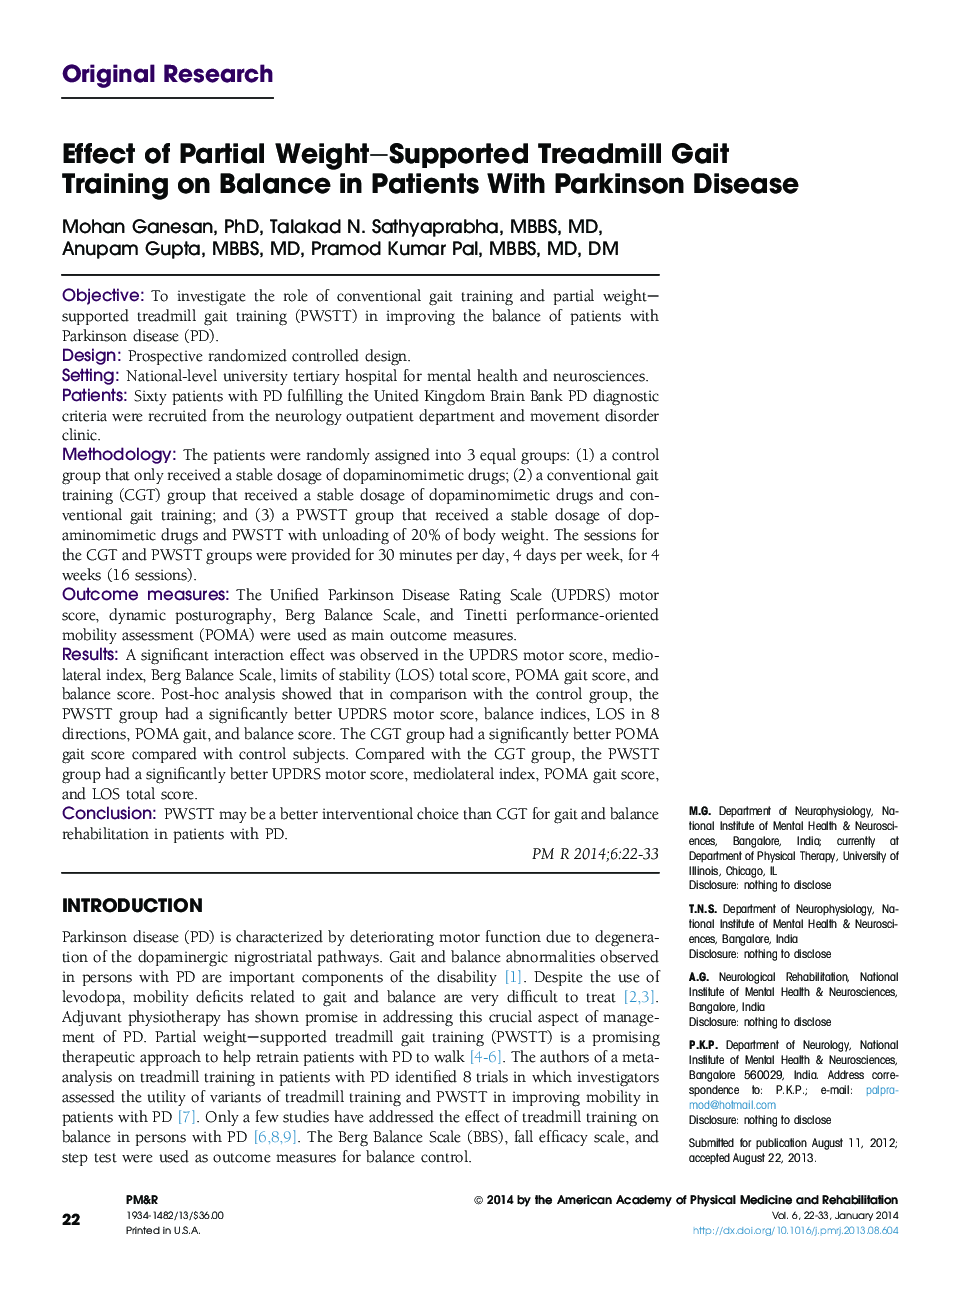 تأثیر تمرینات اضافی تسریع کننده تاخیری جزئی در تمرینات تناوبی در بیماران مبتلا به بیماری پارکینسون 